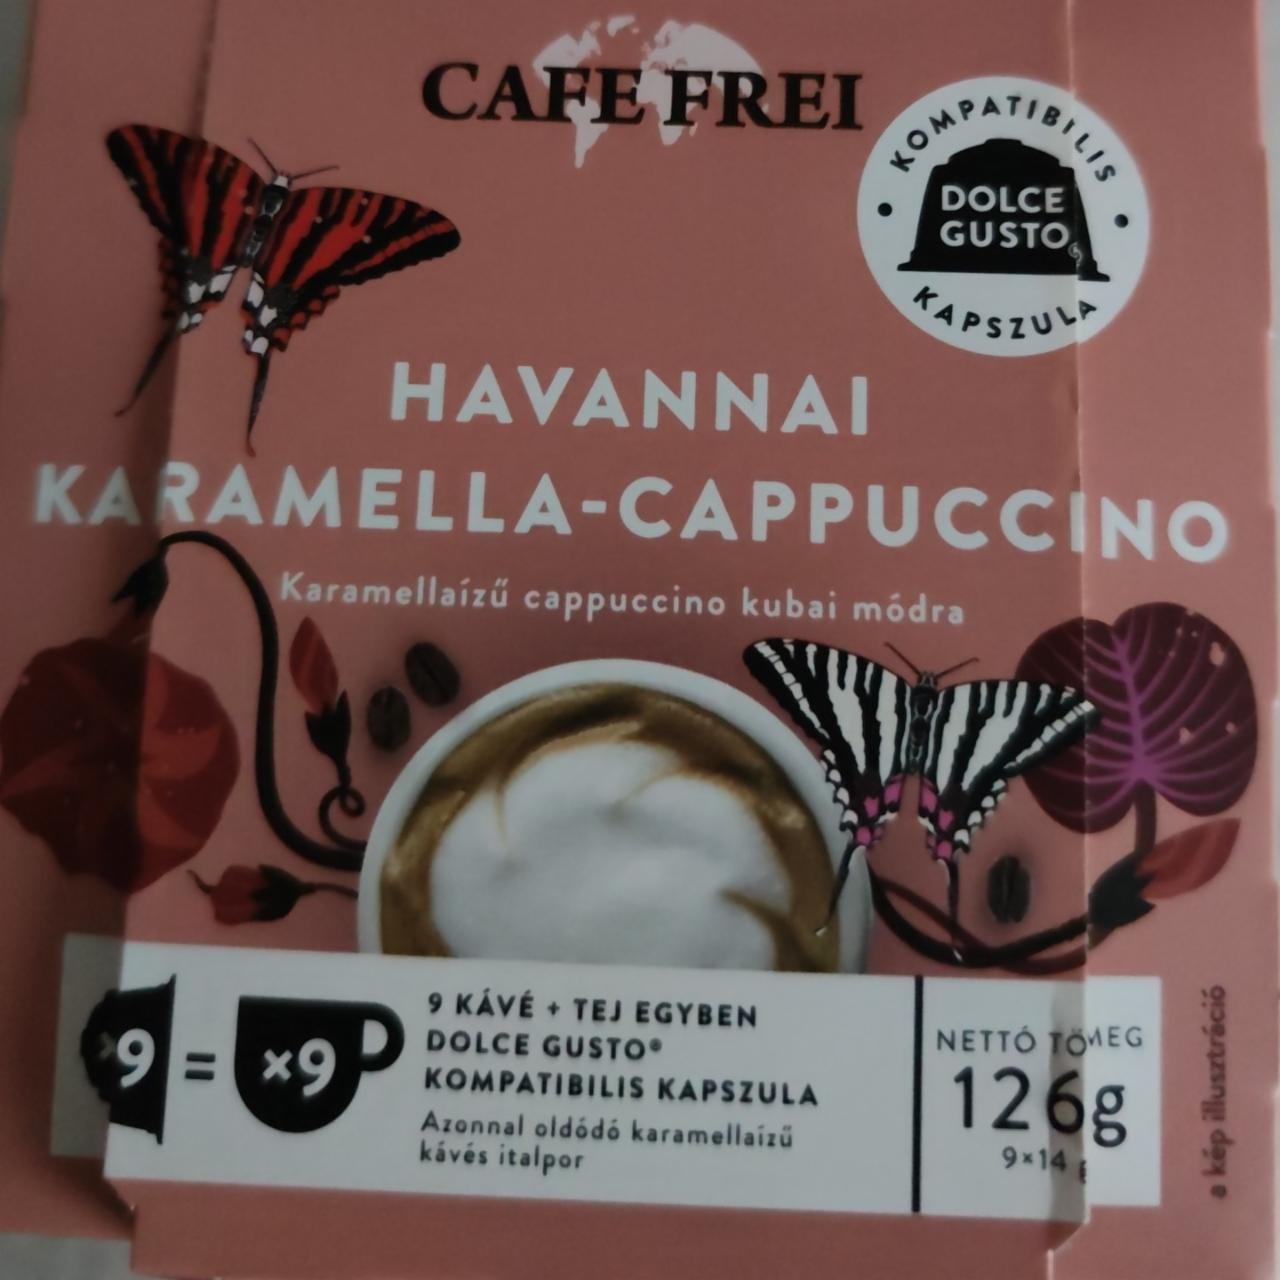 Fotografie - Havannai Karamella-Cappuccino Cafe Frei